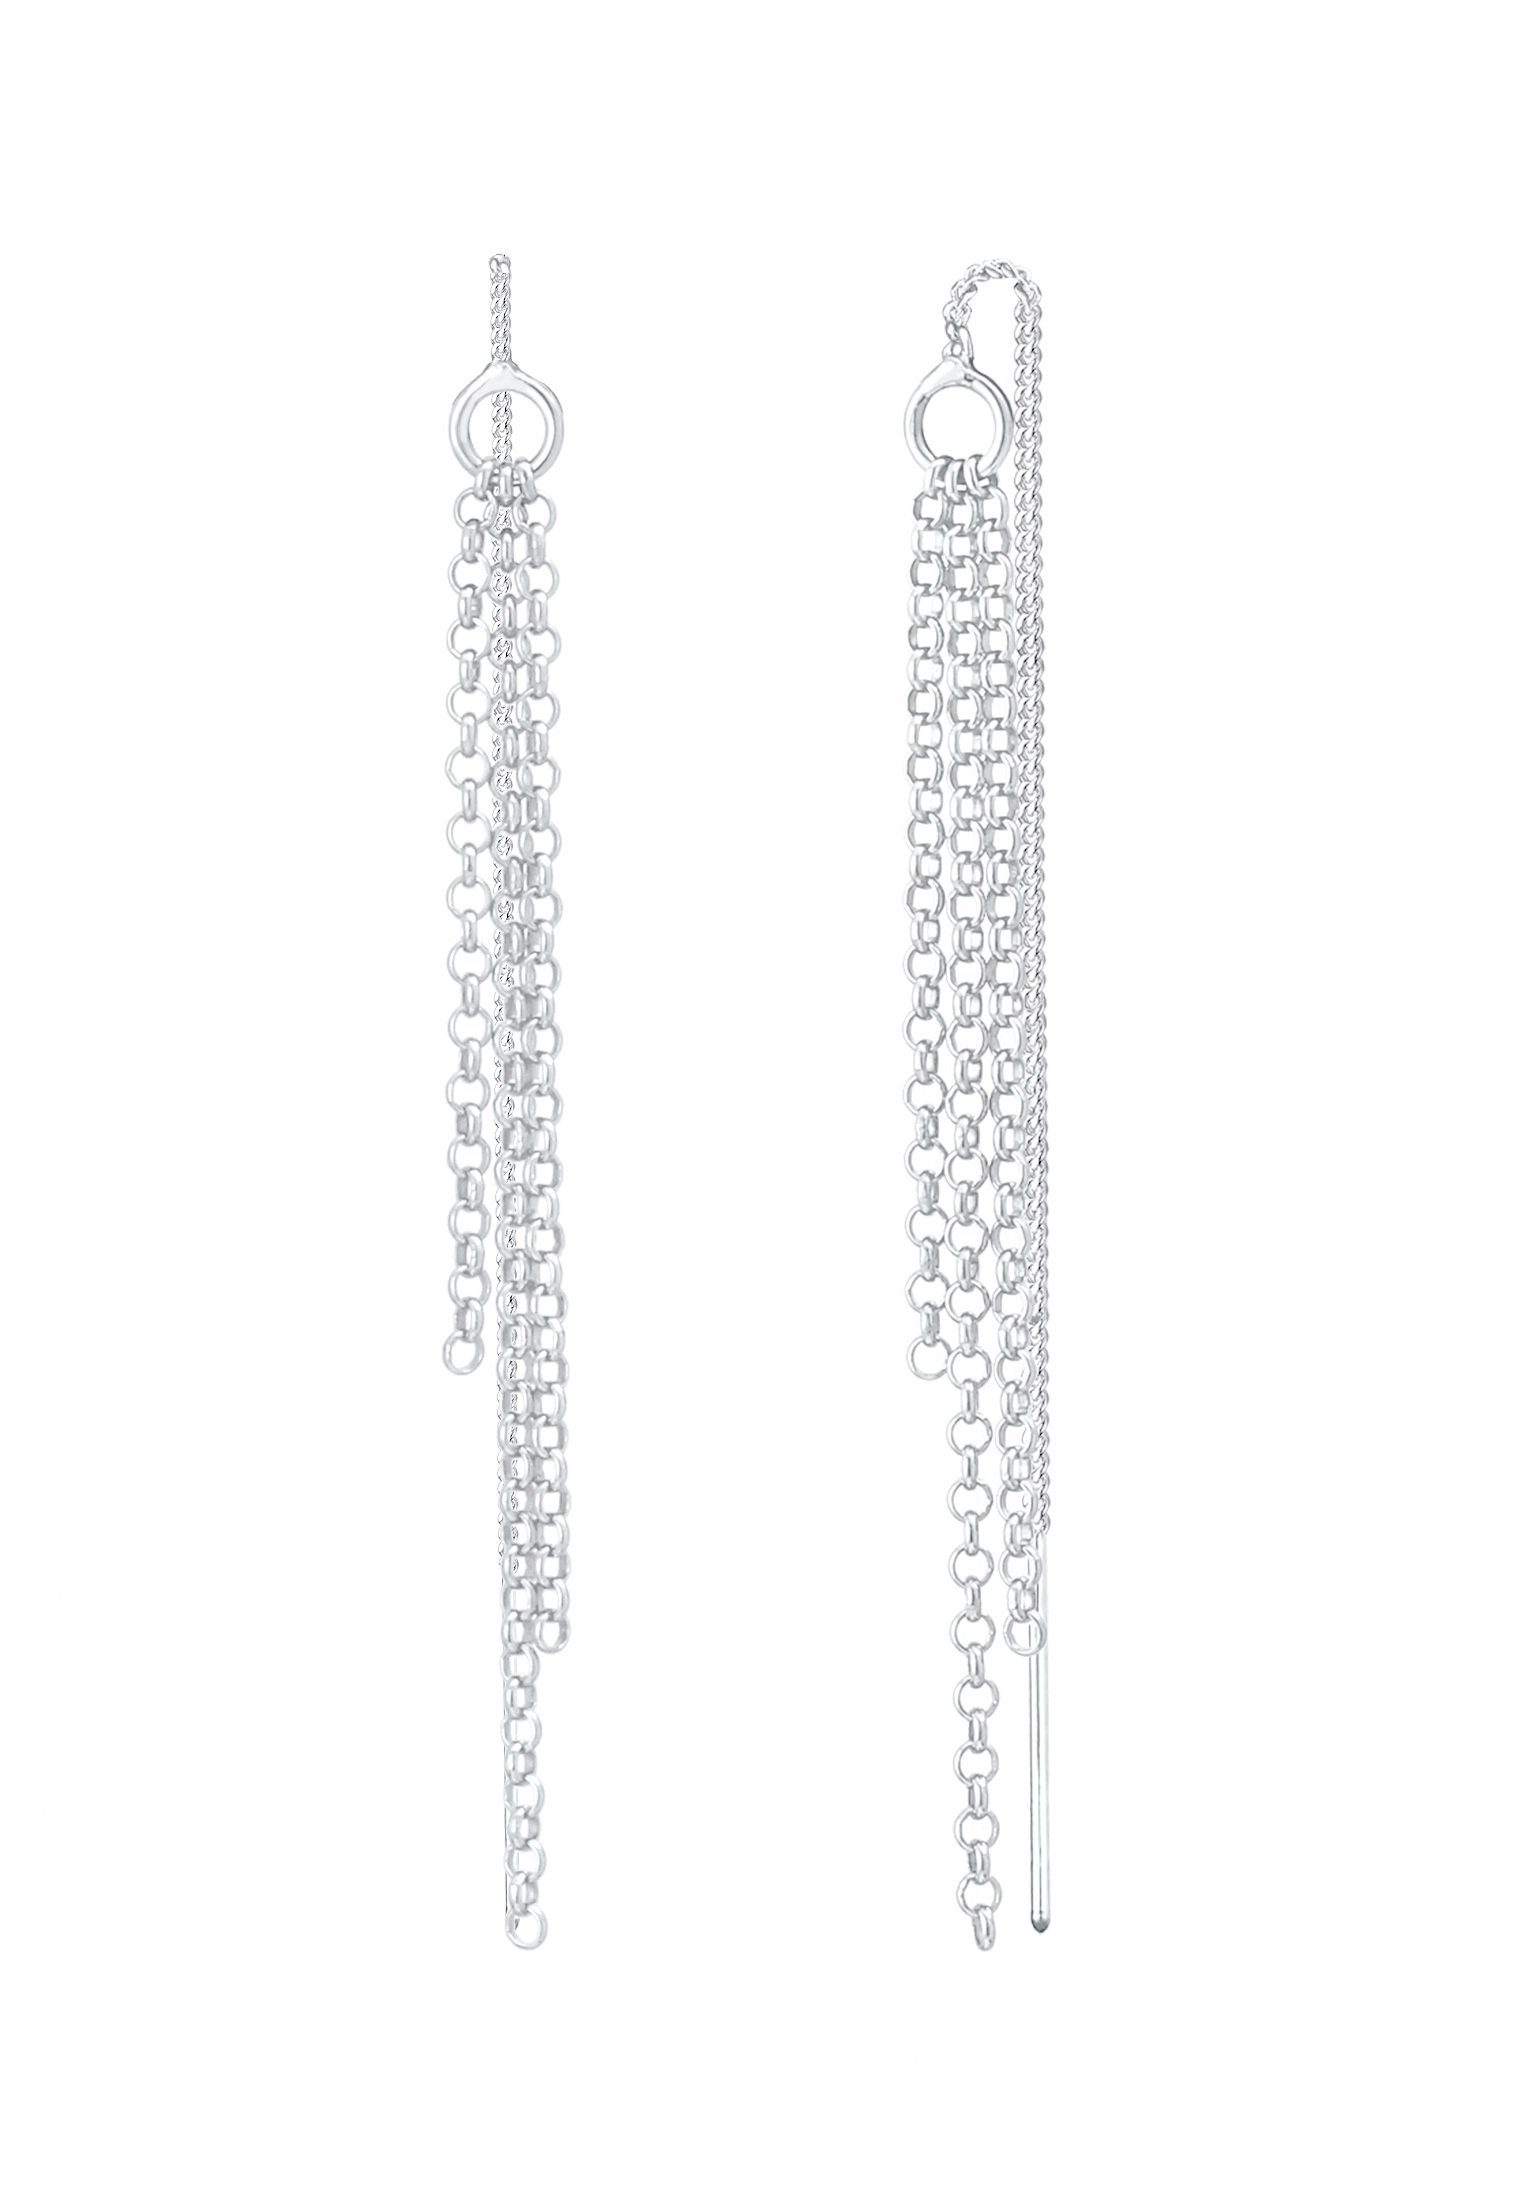 Elegant Style Ohrhänger Paar Silber 925 Ketten Durchzieher Elli